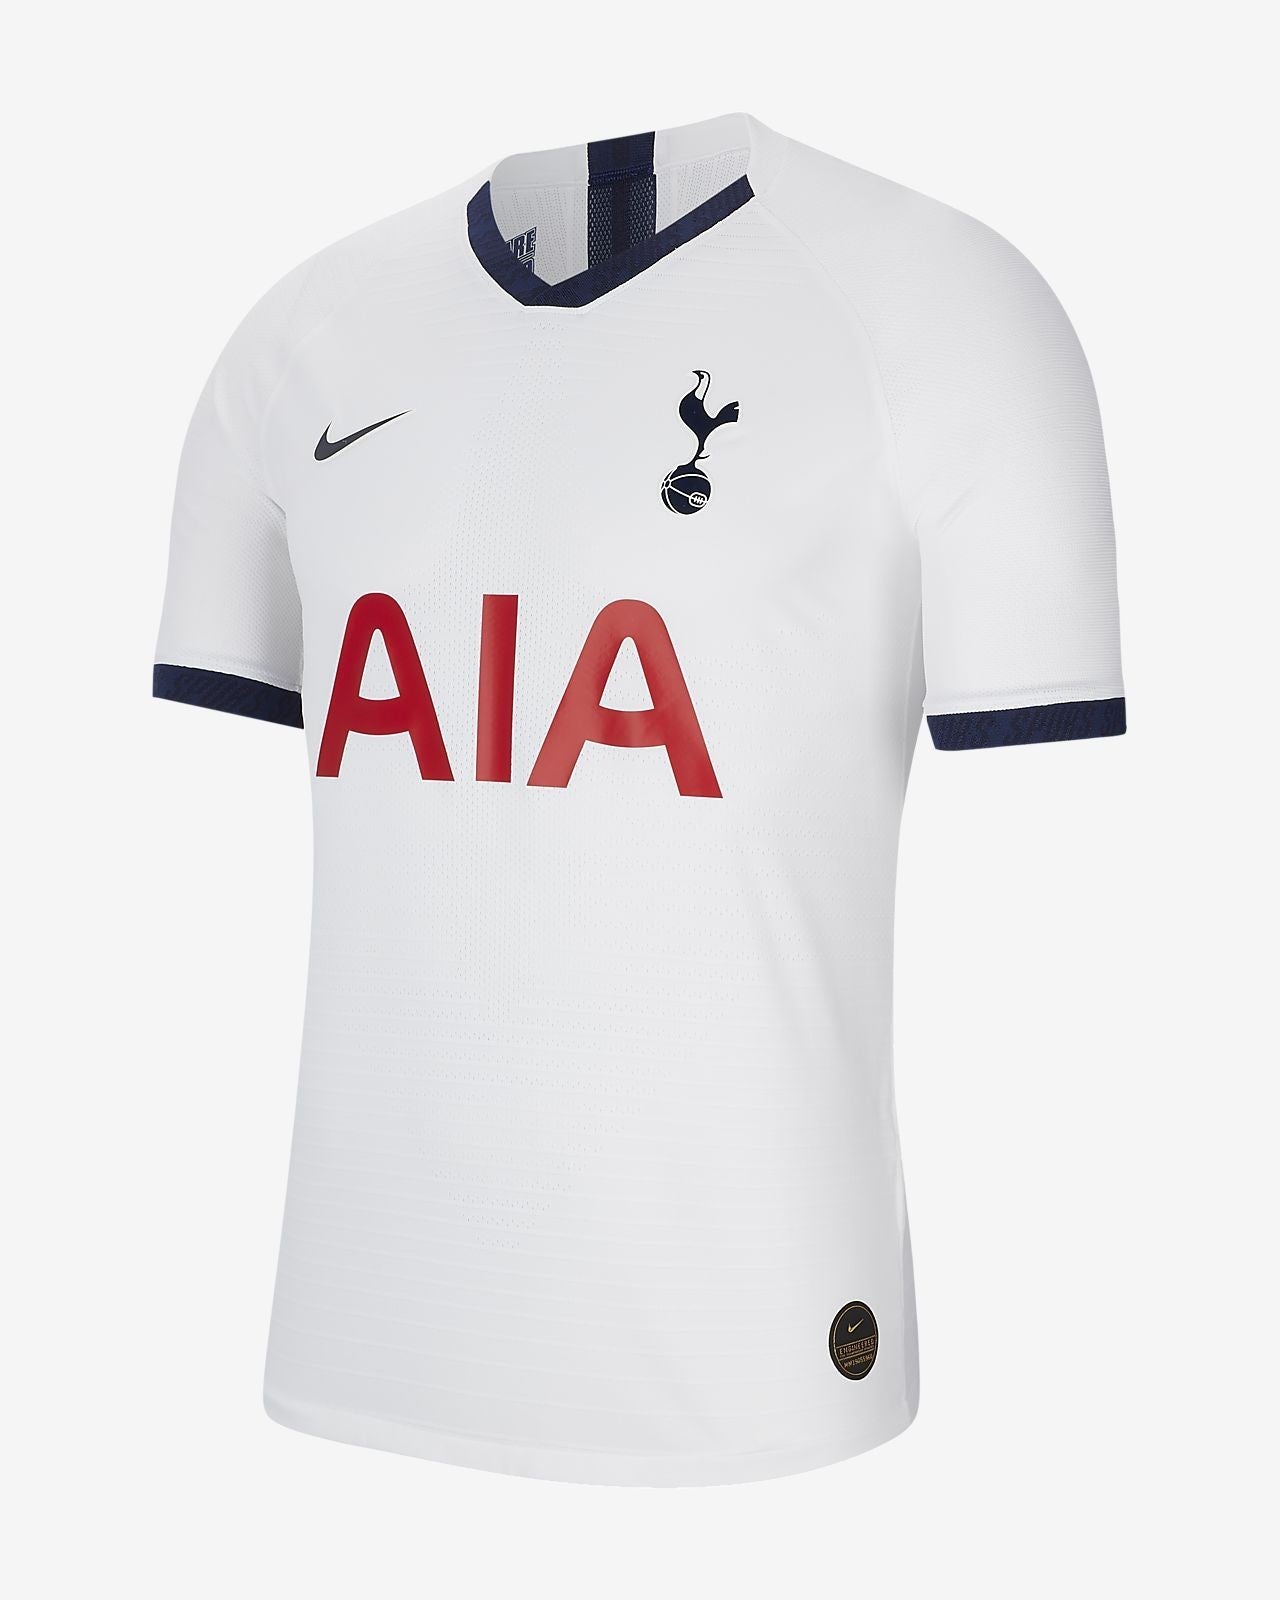 Nike football shirt Tottenham Hotspur 2019/20